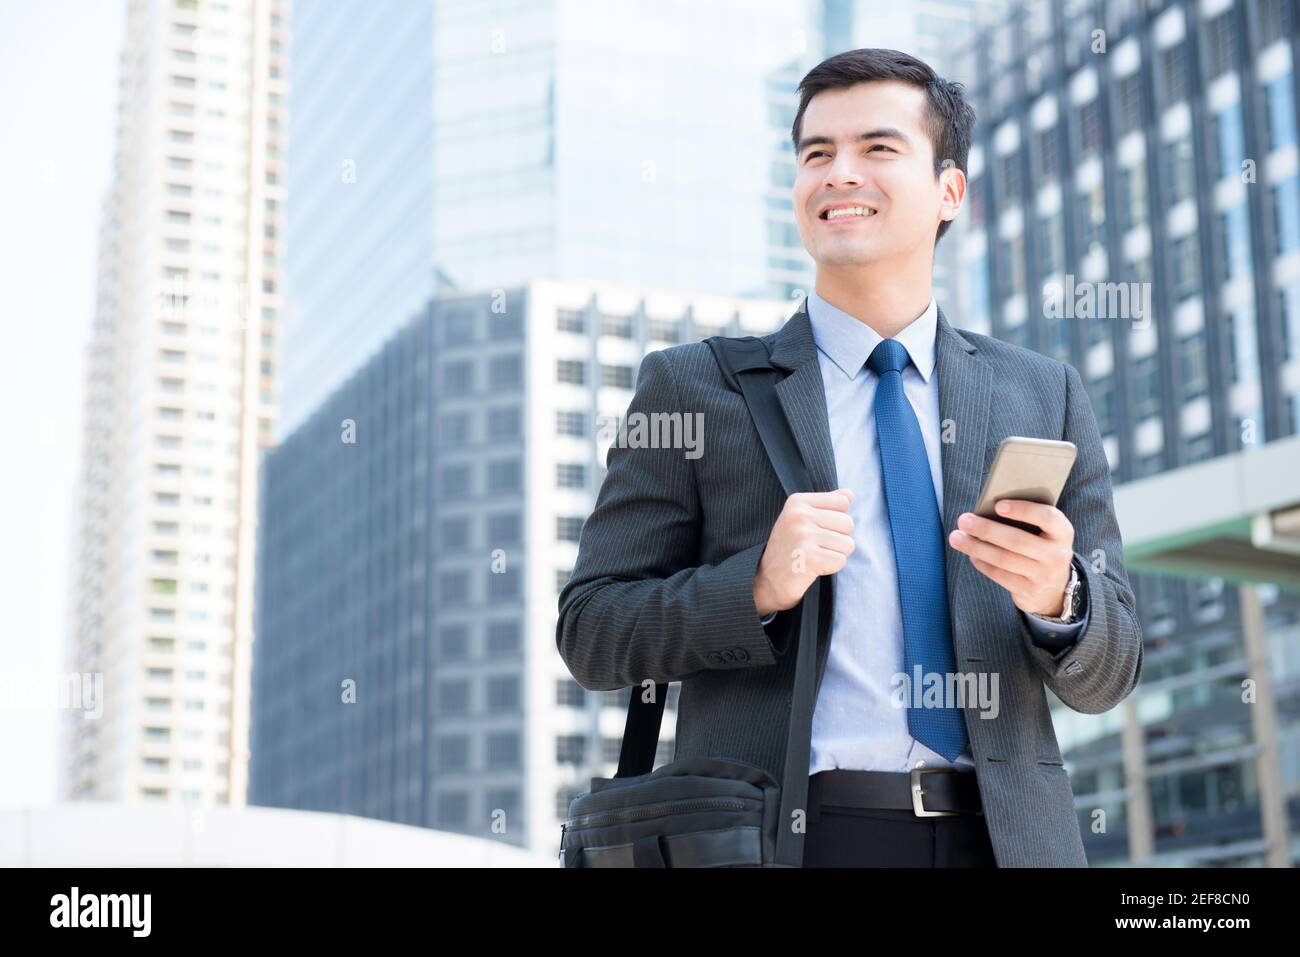 Lächelnder Geschäftsmann, der sein Mobiltelefon benutzt, während er seine Tasche trägt und zu Fuß geht In der Stadt - Geschäftsreisen und mobile Roaming-Konzepte Stockfoto